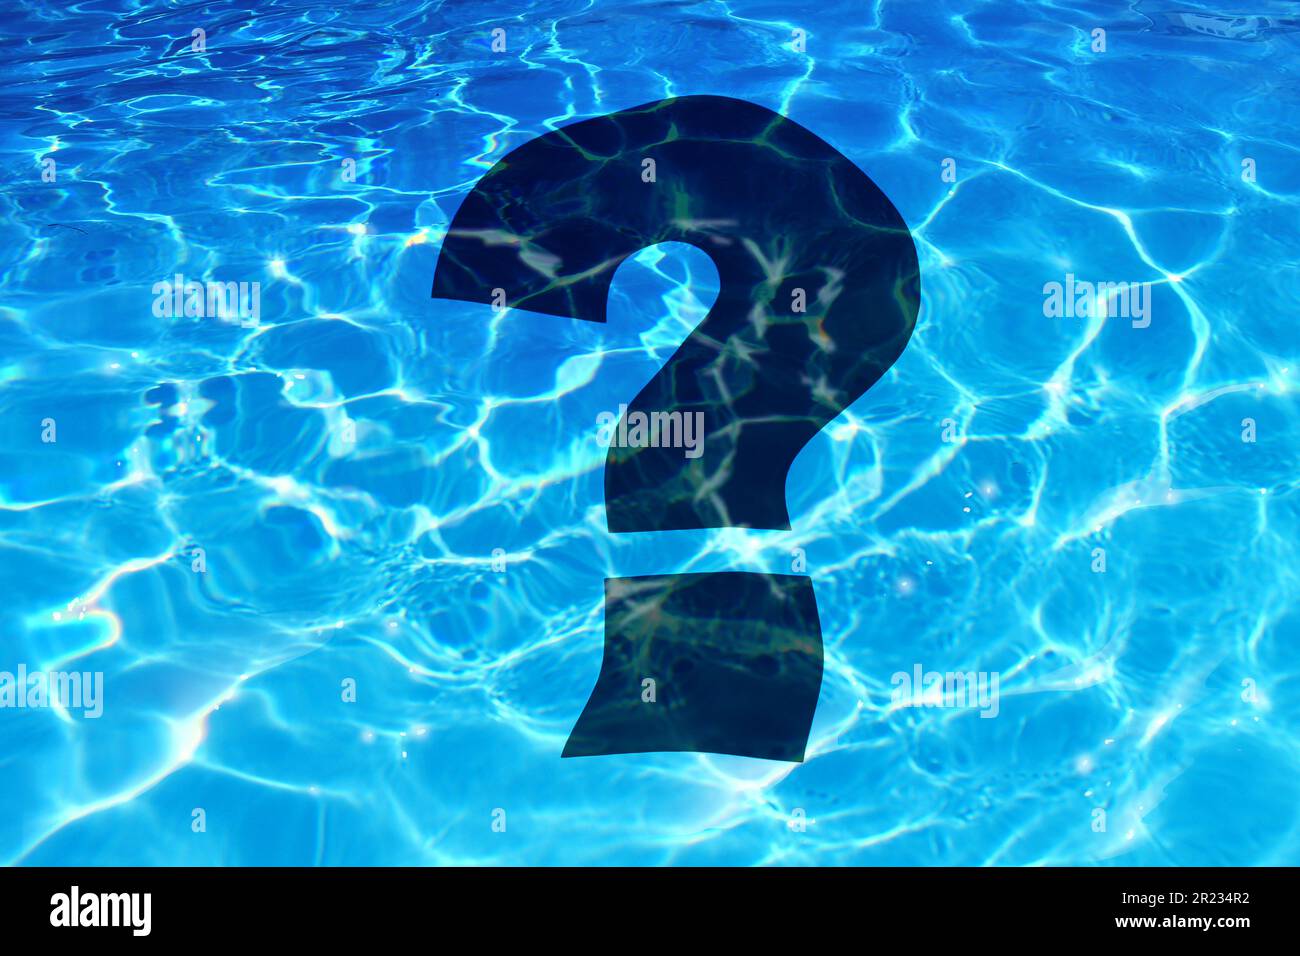 Le domande di piscina e la domanda di stile di vita all'aperto come le edizioni di sicurezza di sport acquatici o le informazioni di nuoto e il simbolo di qualità dell'acqua in un'illustrazione 3D Foto Stock